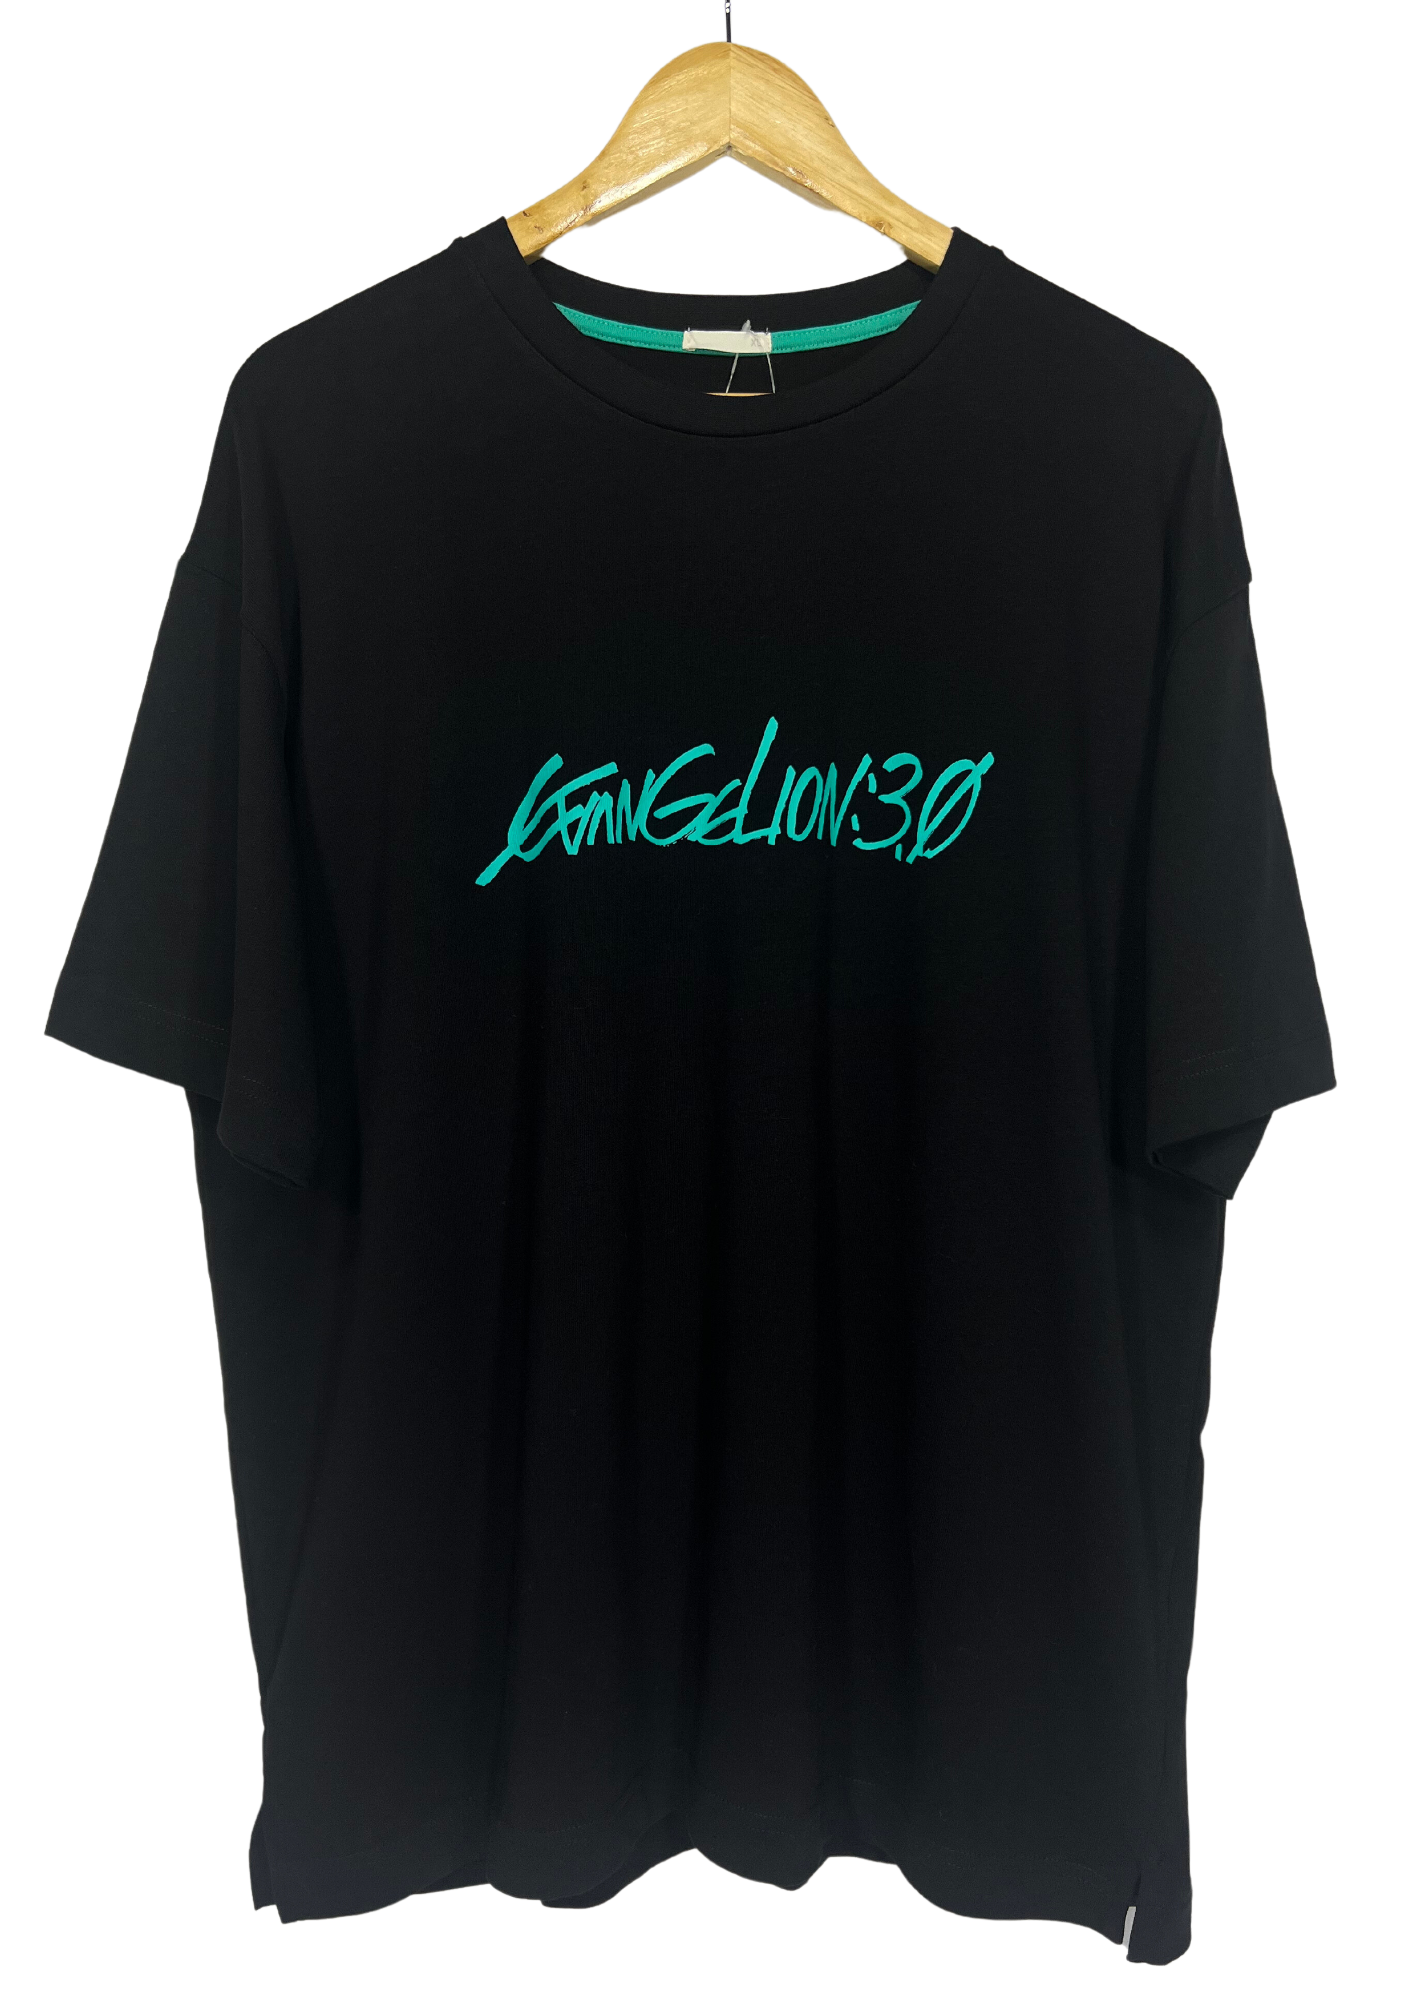 Neon Genesis Evangelion x GU Evangelion 3.0 T-shirt